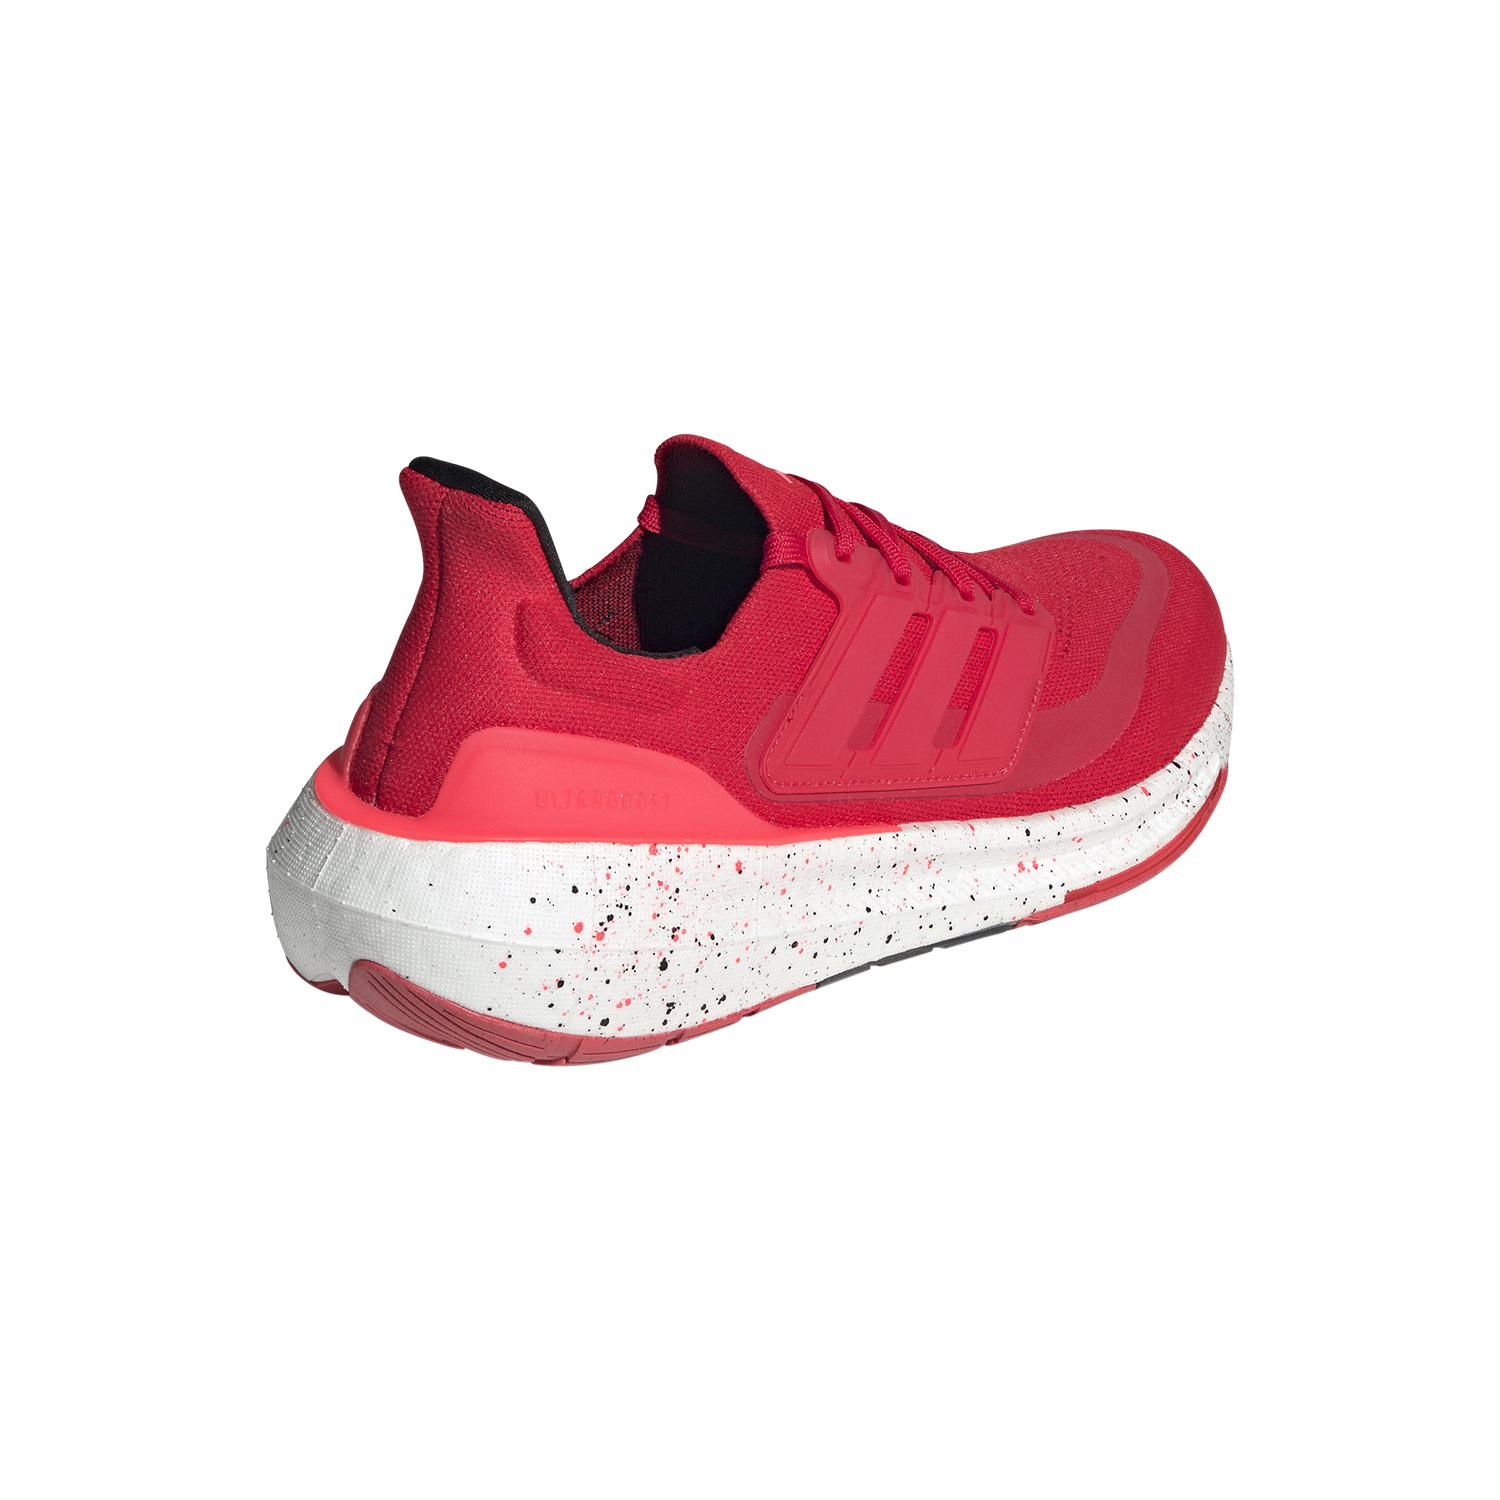 adidas Ultraboost Light - Better Scarlet/Solar Red